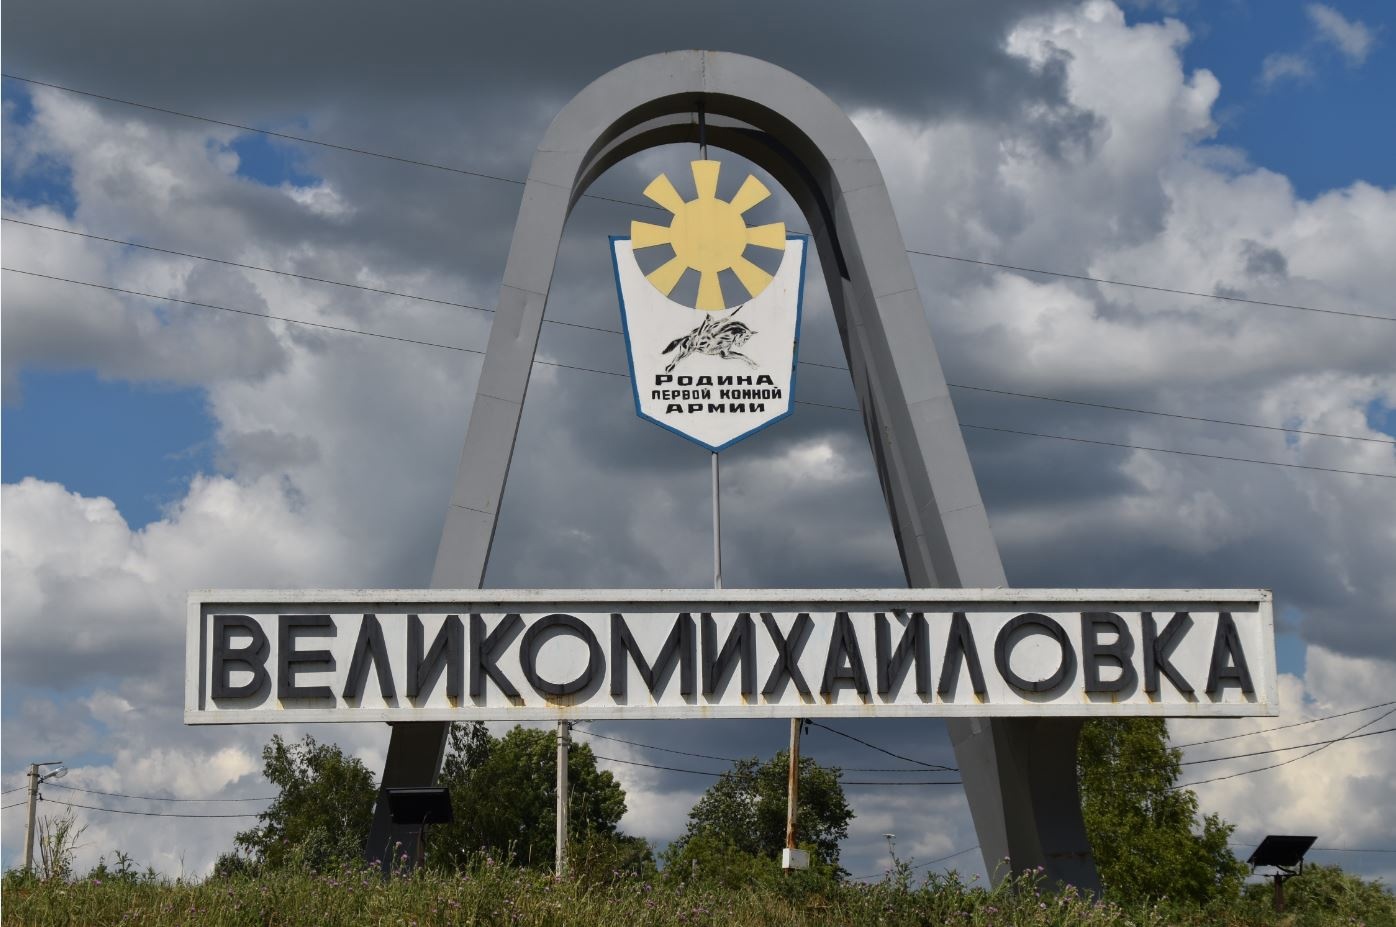 Сегодня дан старт голосованию за лучшую достопримечательность Белгородской области.